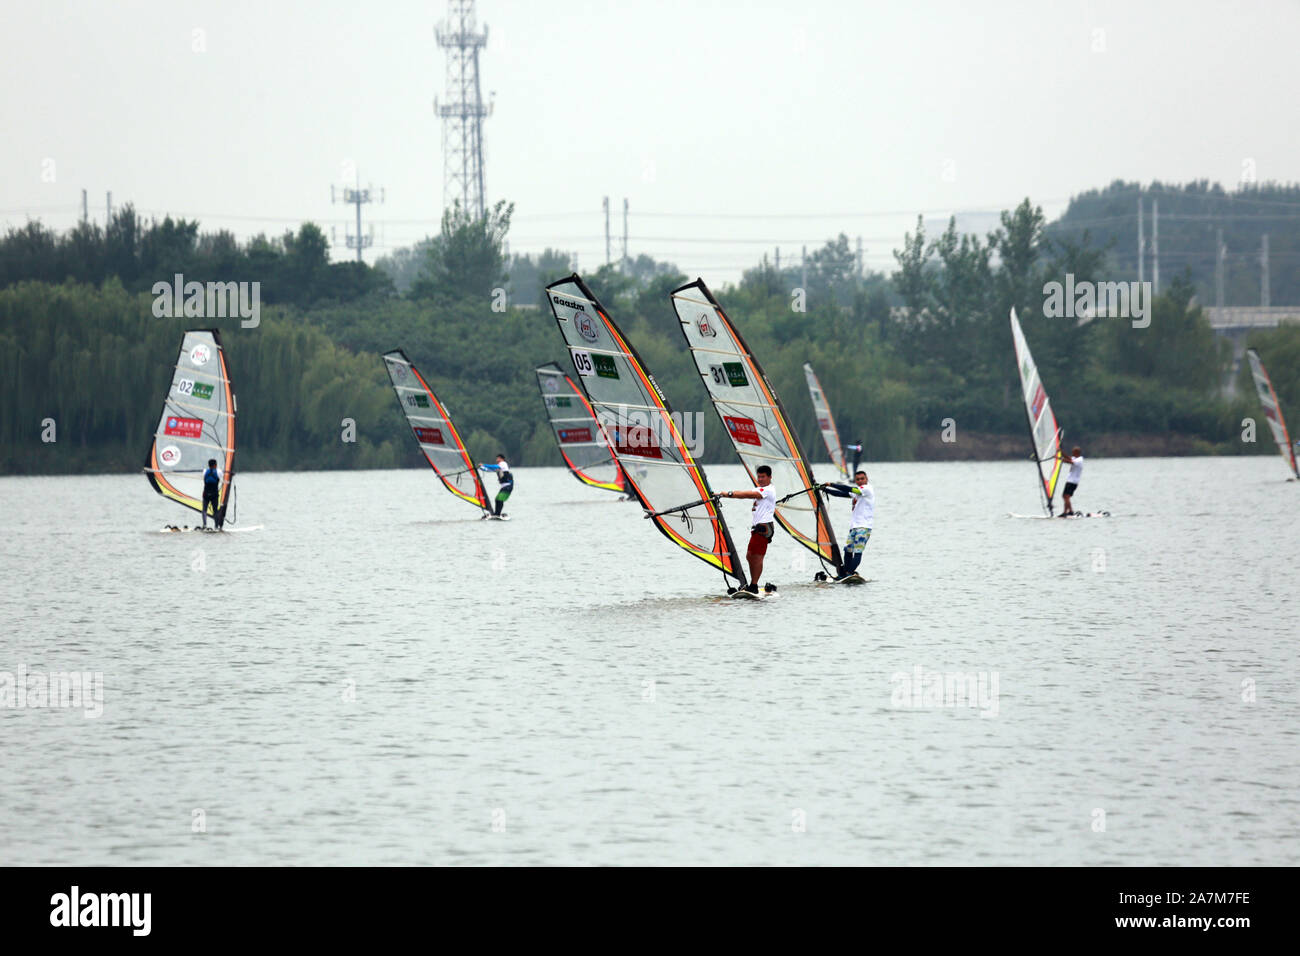 Les gens de la planche à voile au lac de lilas Parc en Chine de 11e Défi Planche à voile à Shenyang city, au nord-est de la province de Liaoning, Chine 7 septemb Banque D'Images